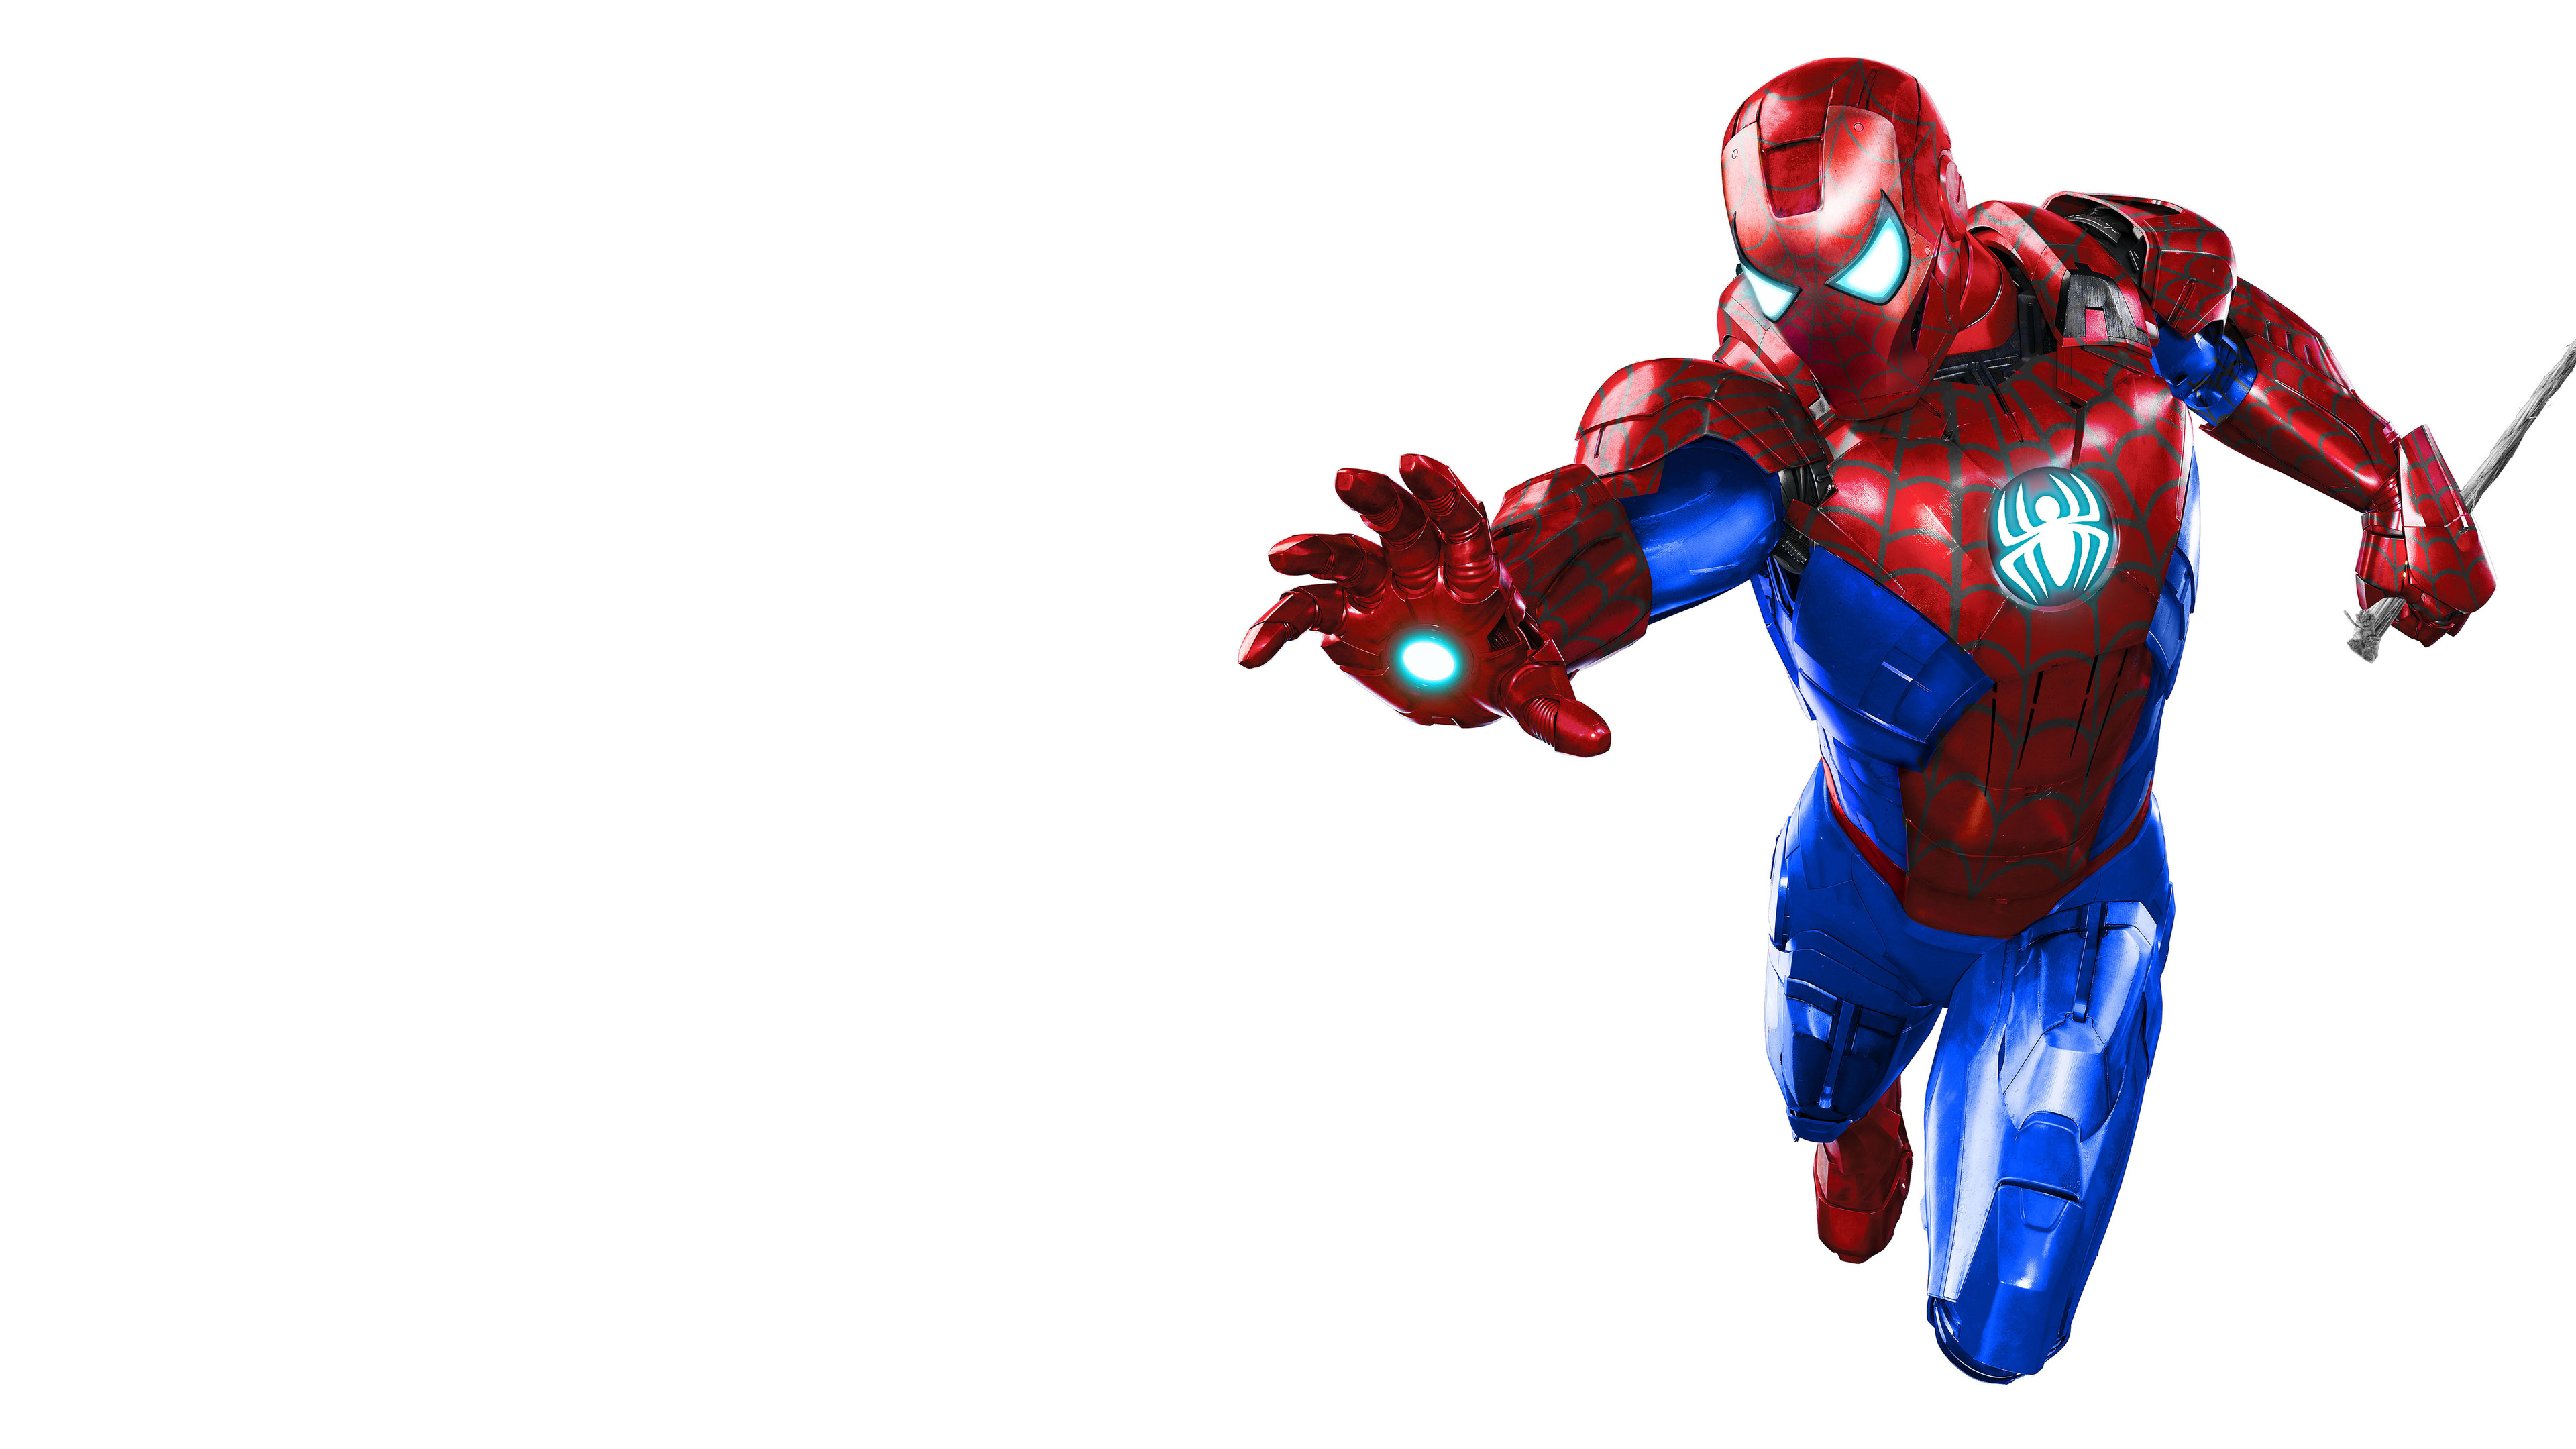 2560x1440 Resolution Avengers Infinity War Iron Spider in Spider-Man Game  1440P Resolution Wallpaper - Wallpapers Den